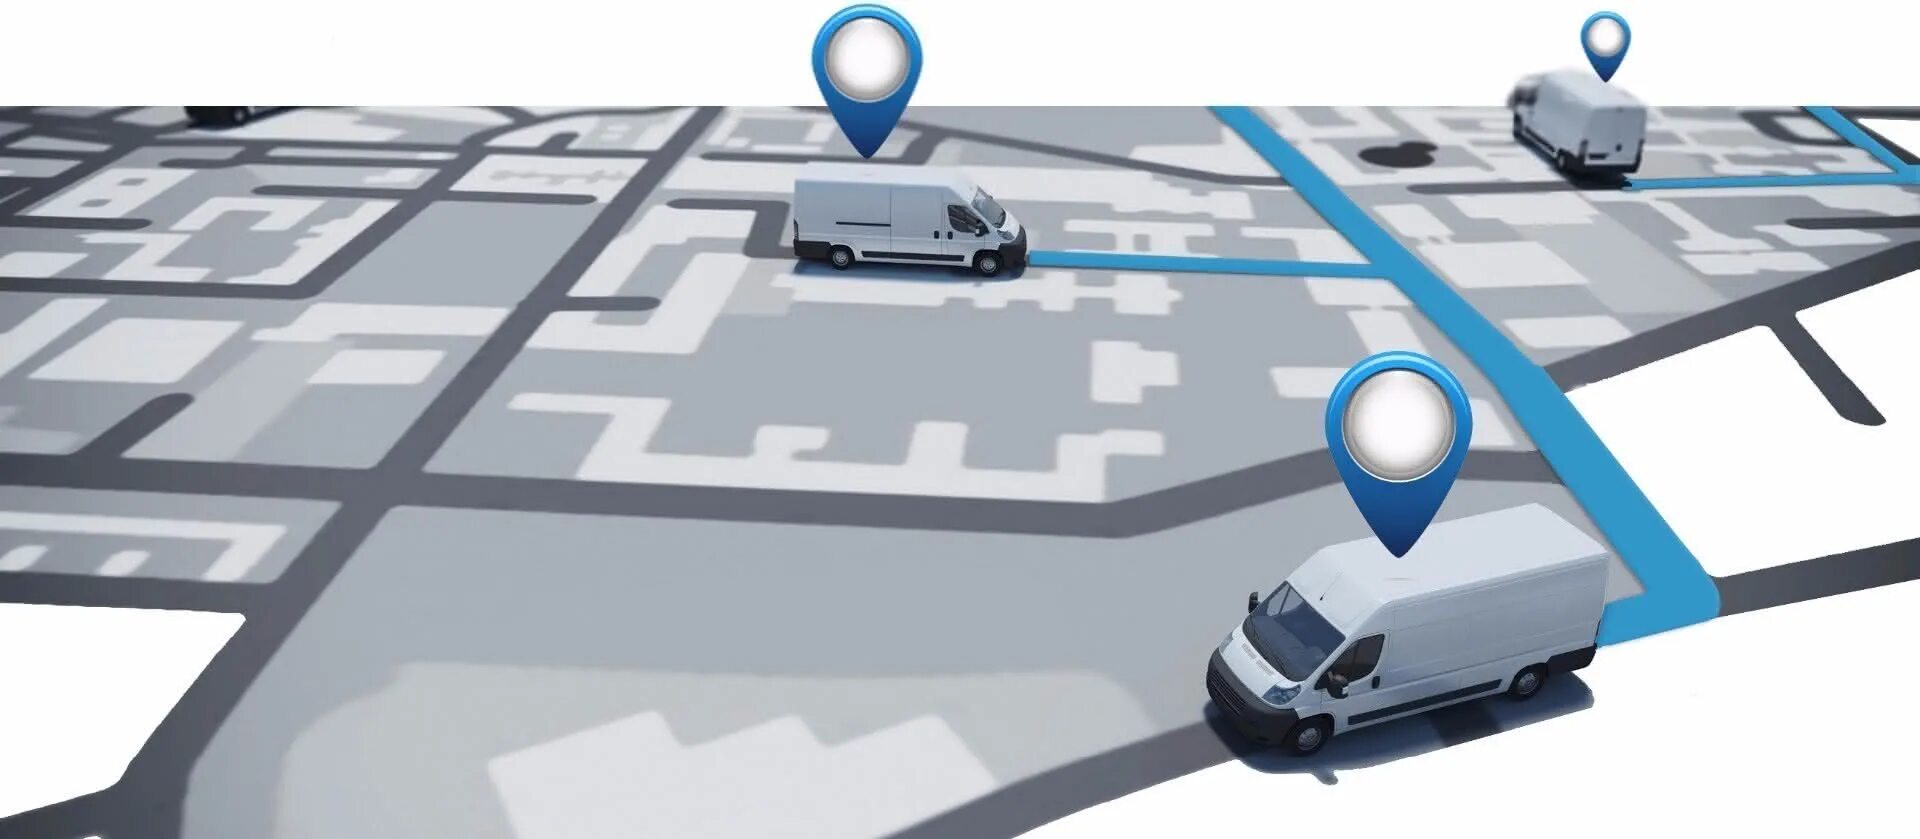 Виде транспортного средства контроль. Система отслеживания транспортных средств. GPS мониторинг автотранспорта. Система слежения за автомобилем. Мониторинг транспорта GPS ГЛОНАСС.